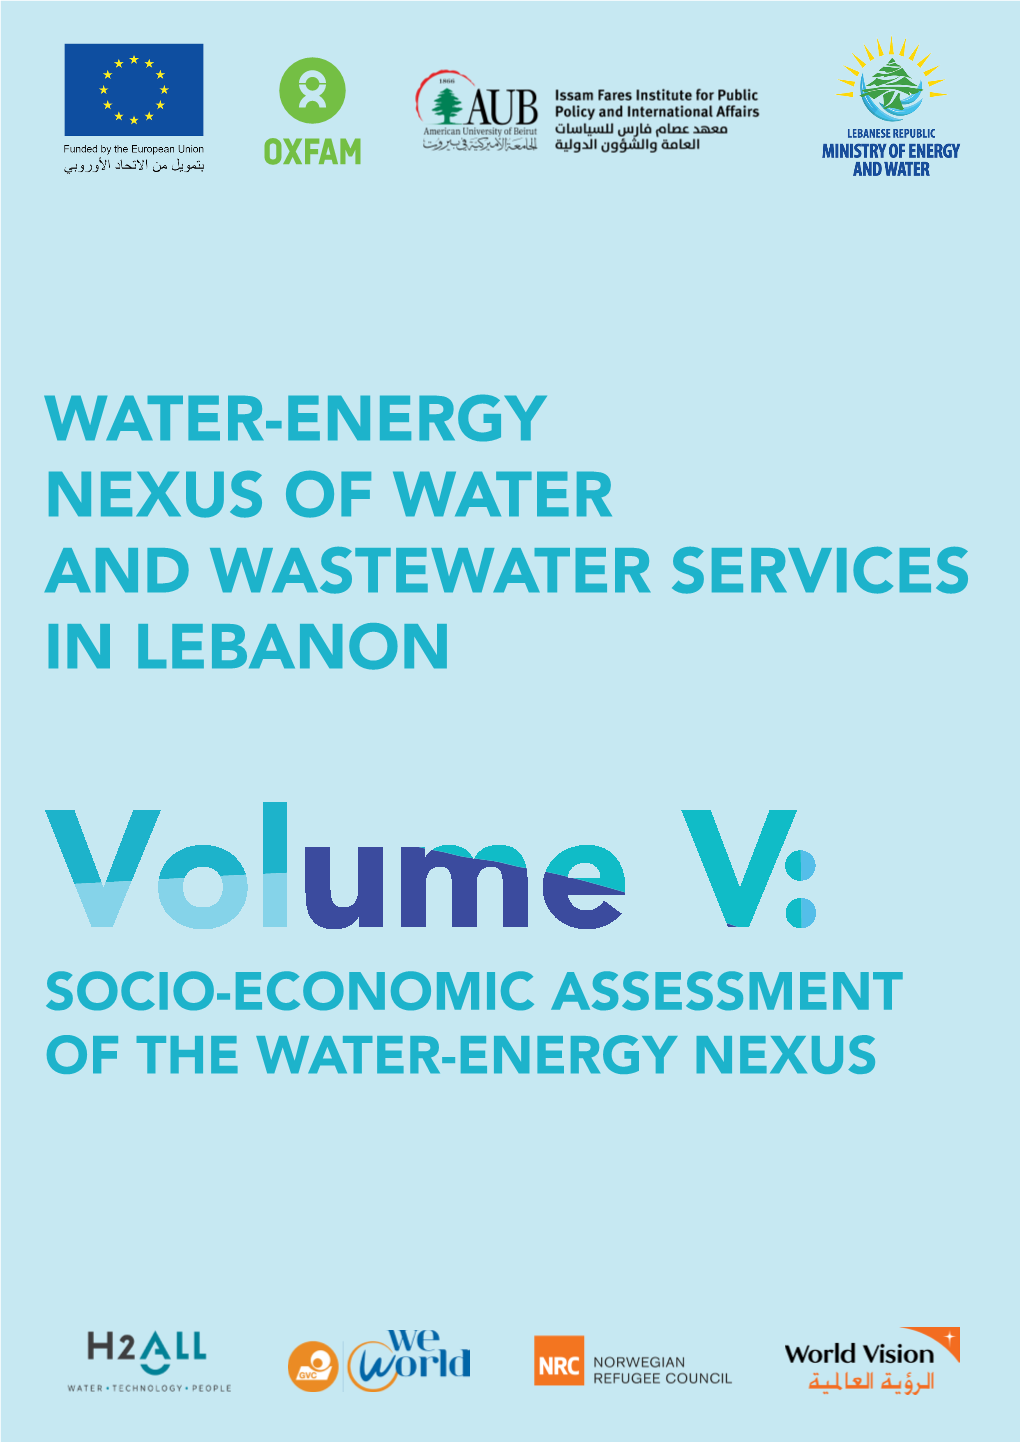 Socio-Economic Assessment of the Water-Energy Nexus